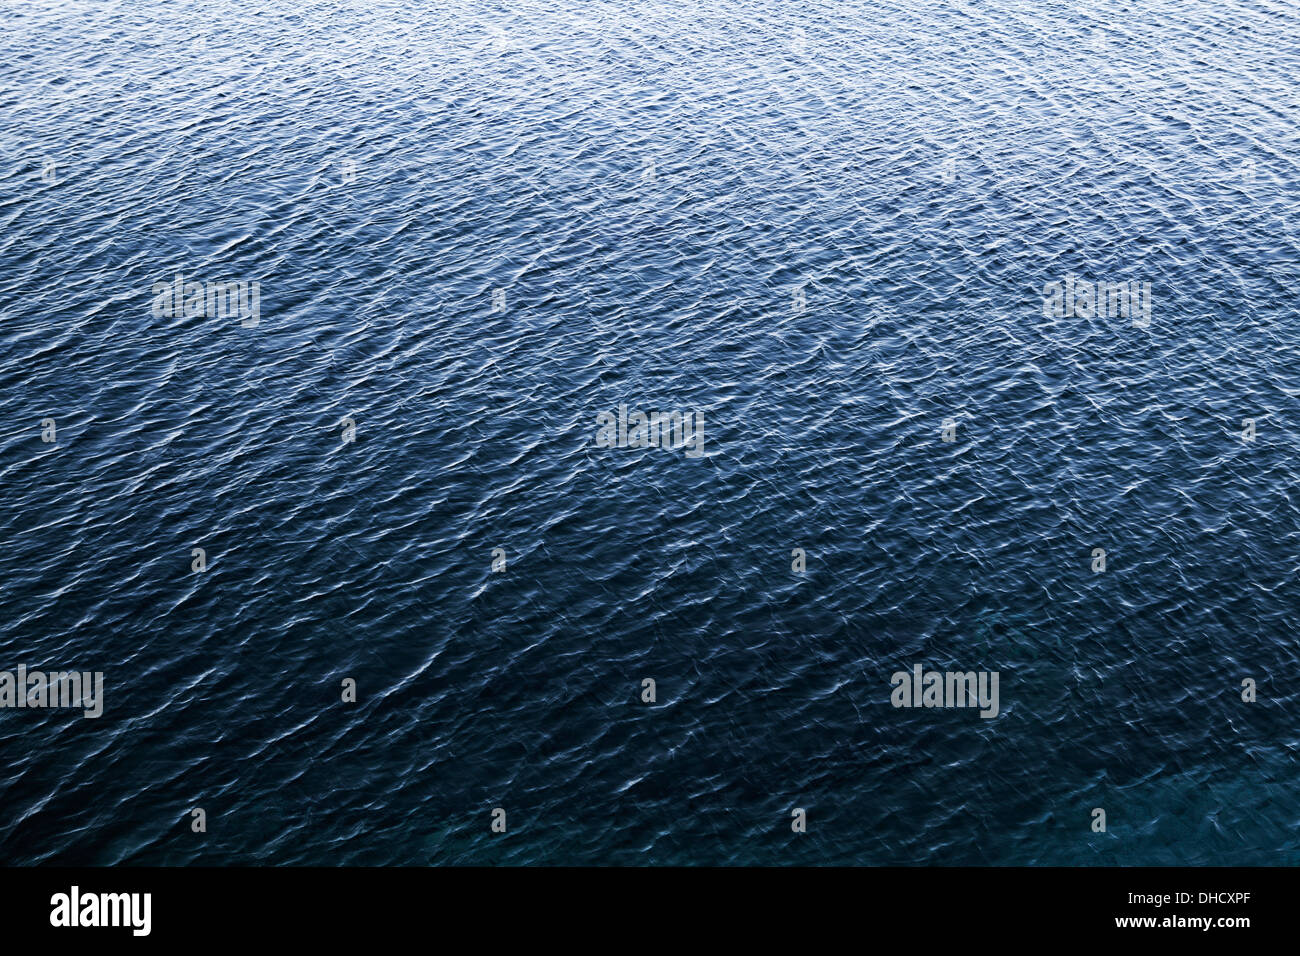 Croatia, Mediterranean Sea, ocean Stock Photo